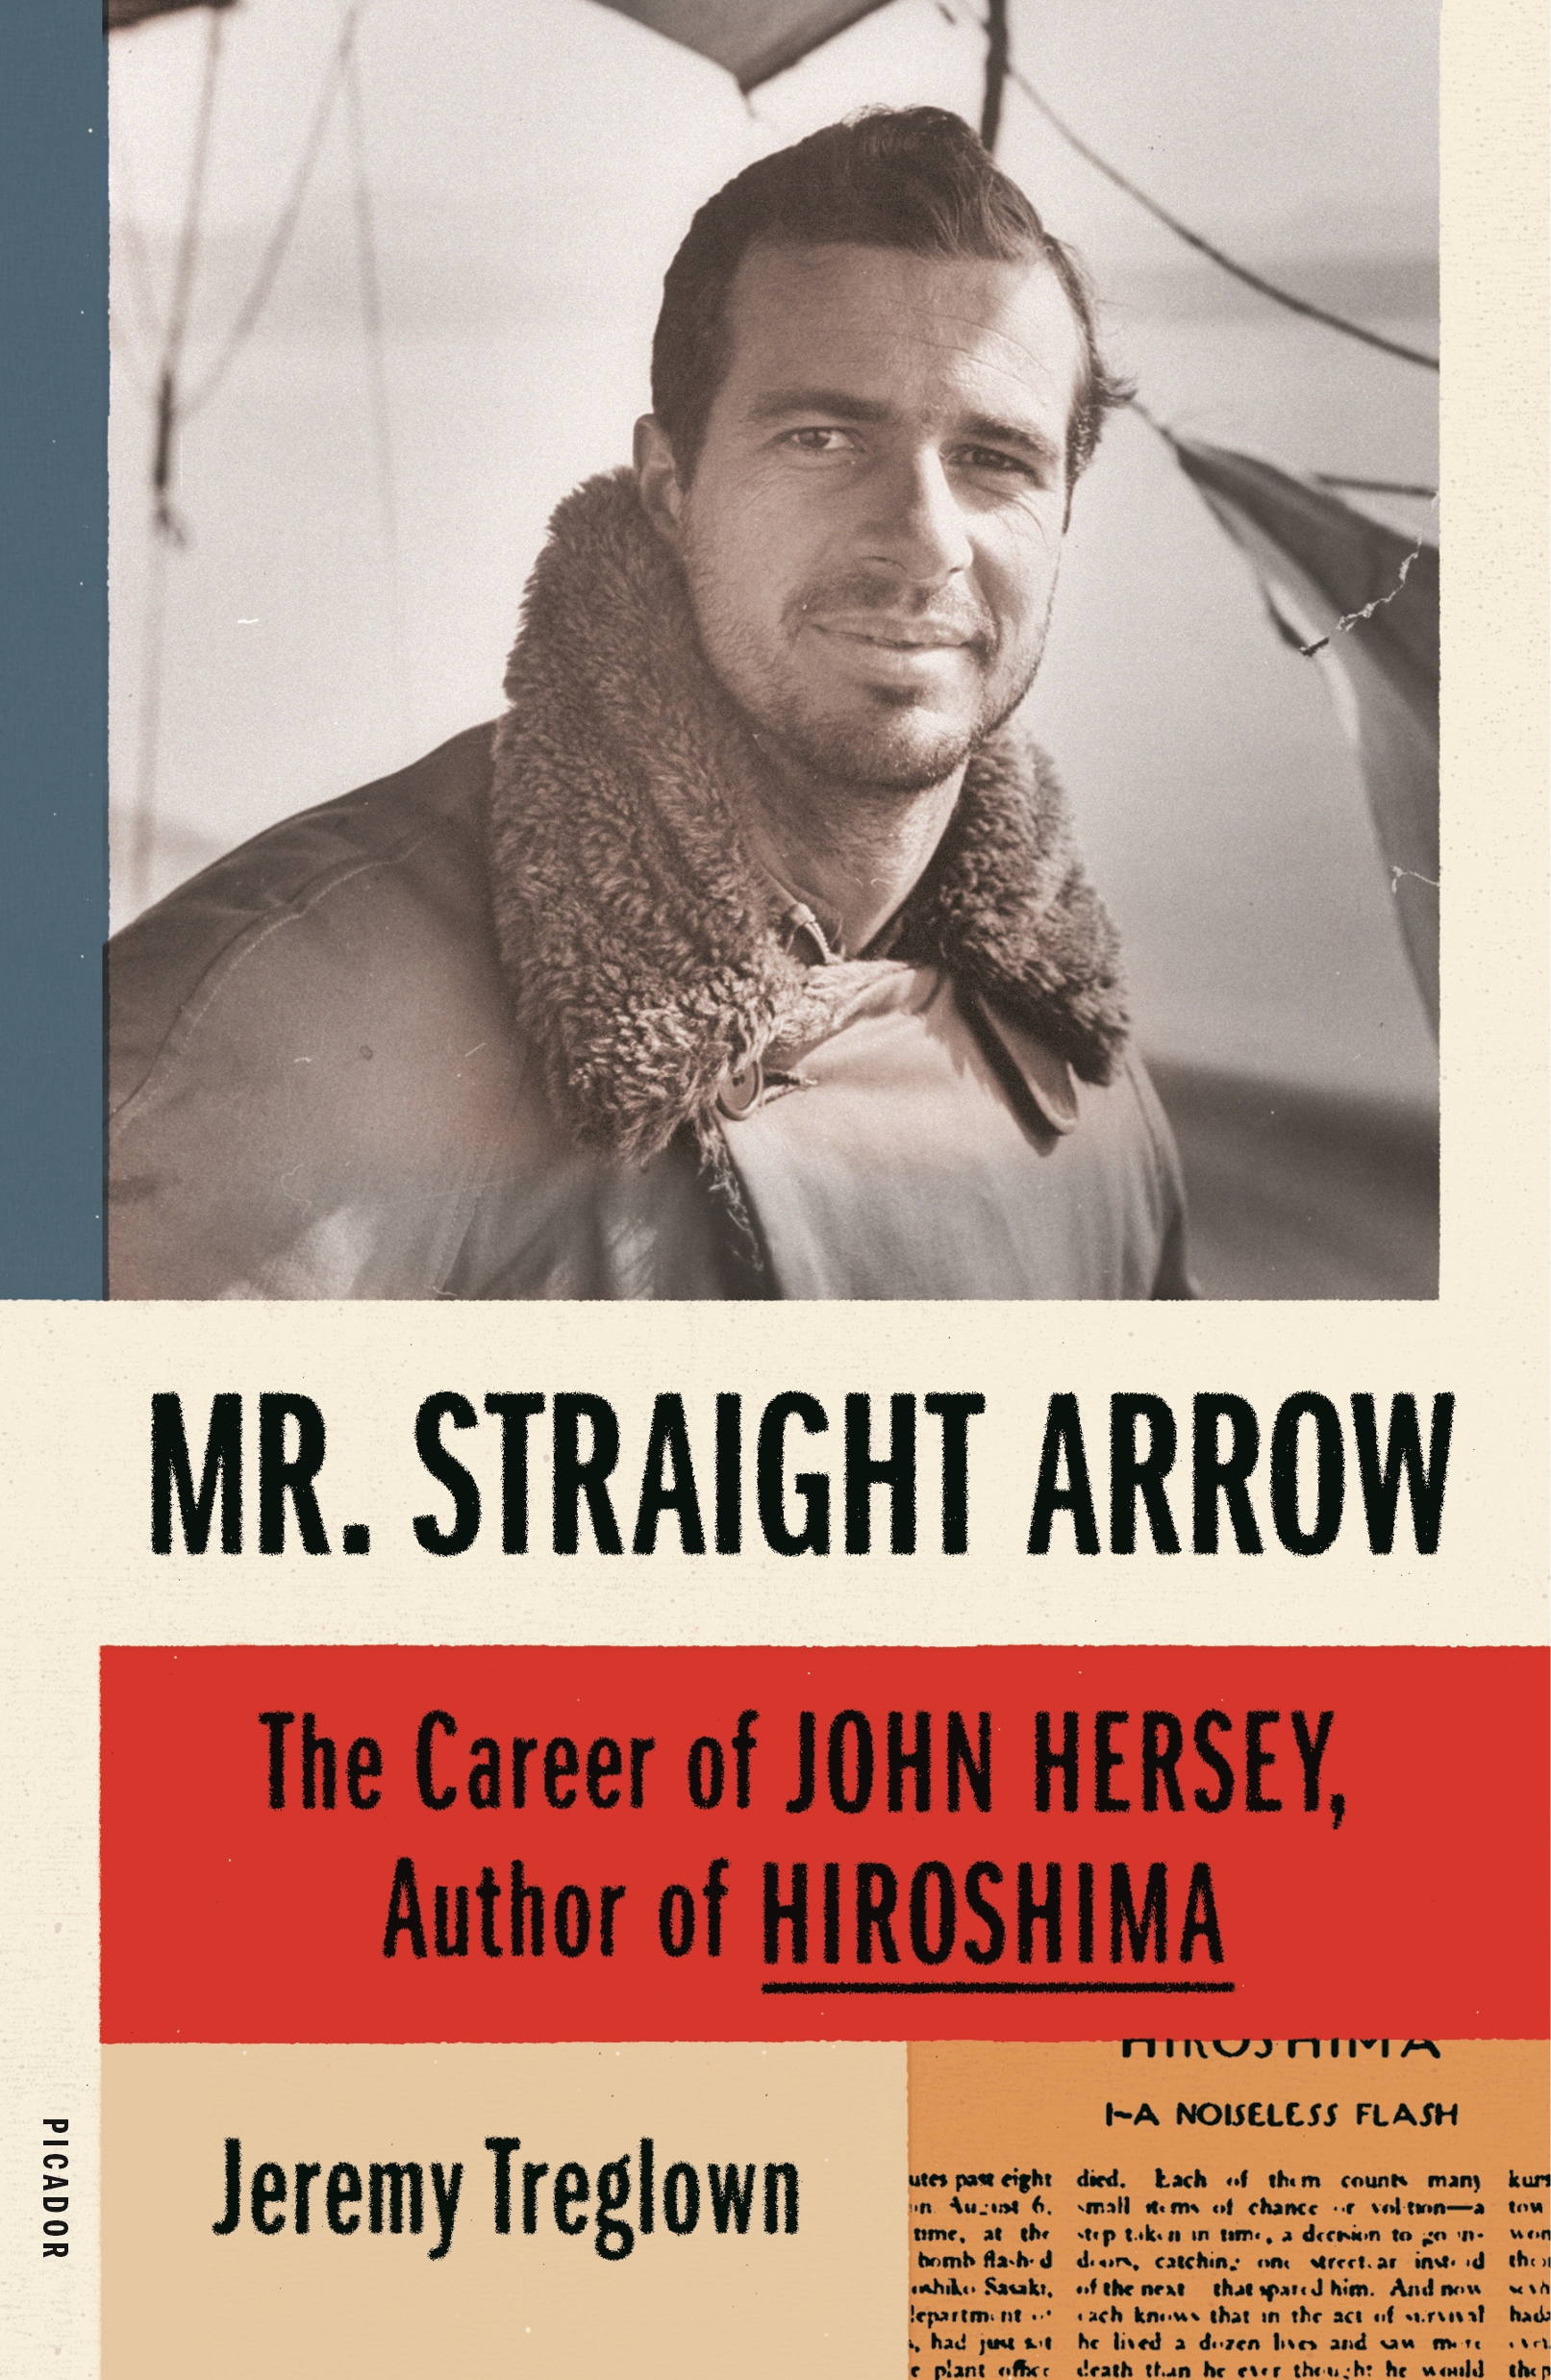 Book “Mr. Straight Arrow” by Jeremy Treglown — April 28, 2020